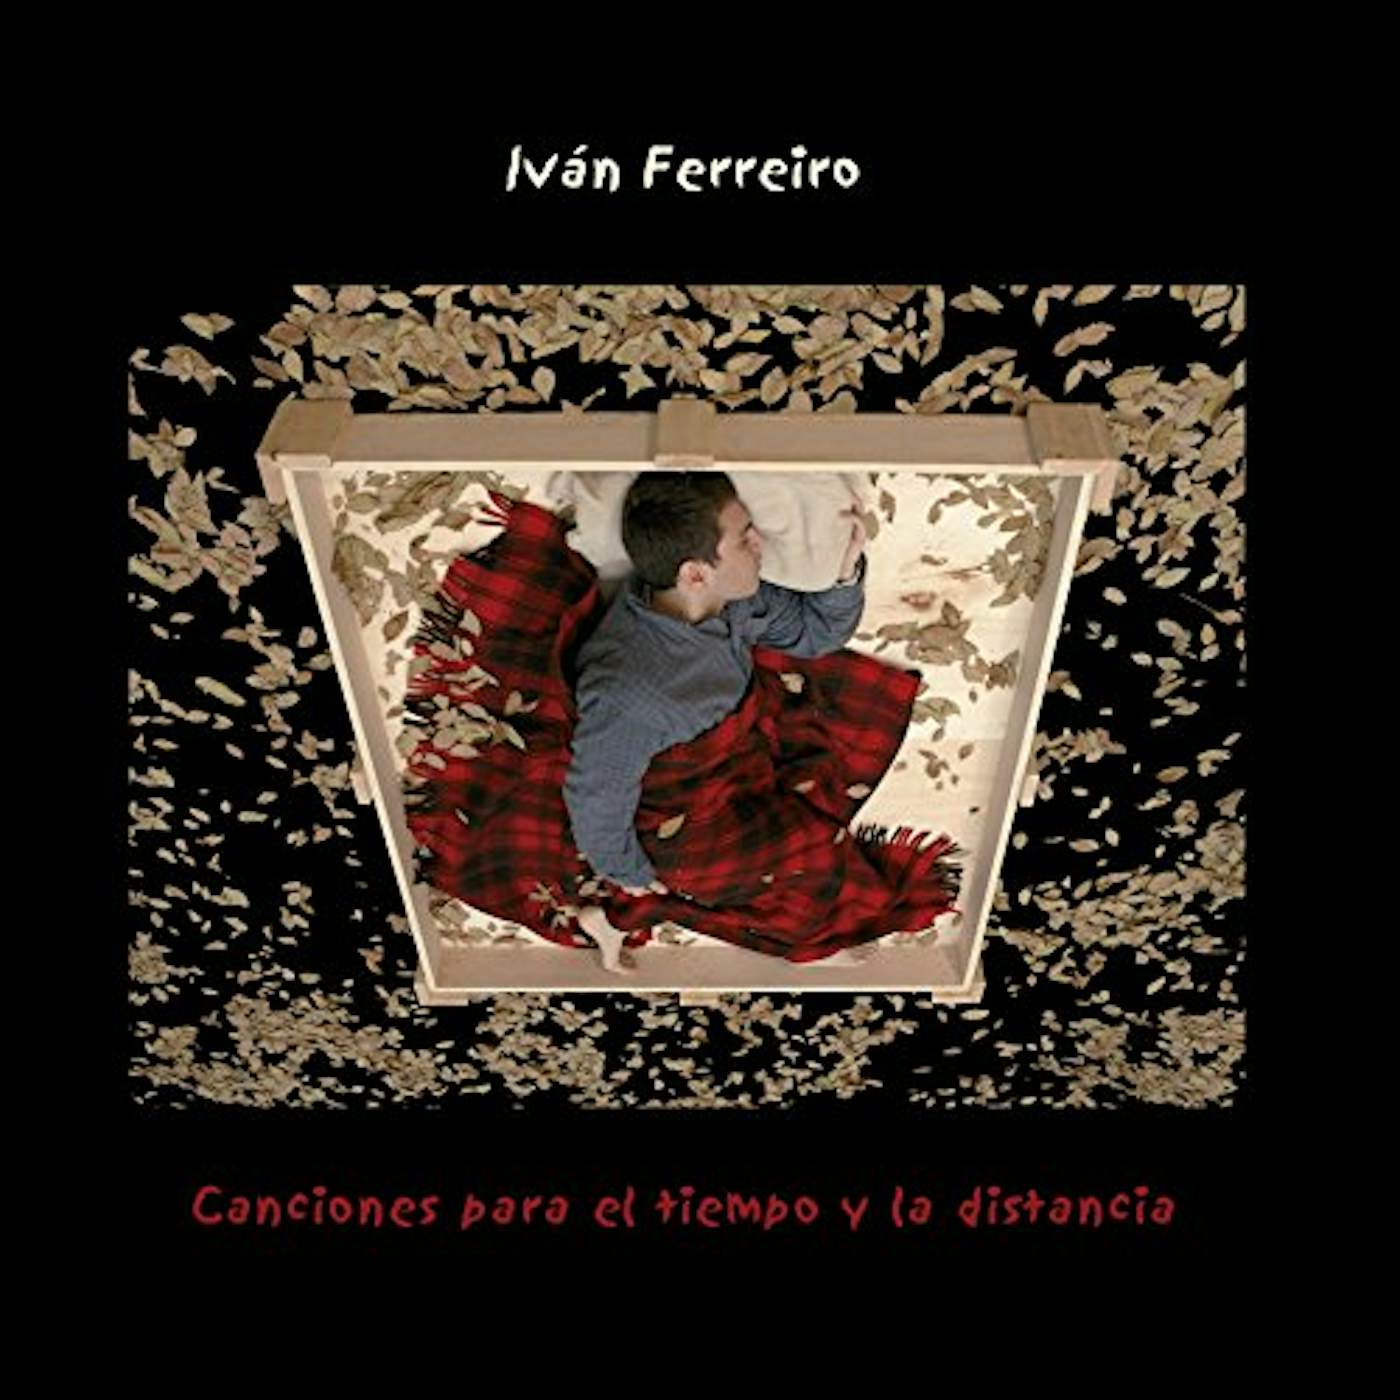 Ivan Ferreiro Canciones para el tiempo y la distancia Vinyl Record